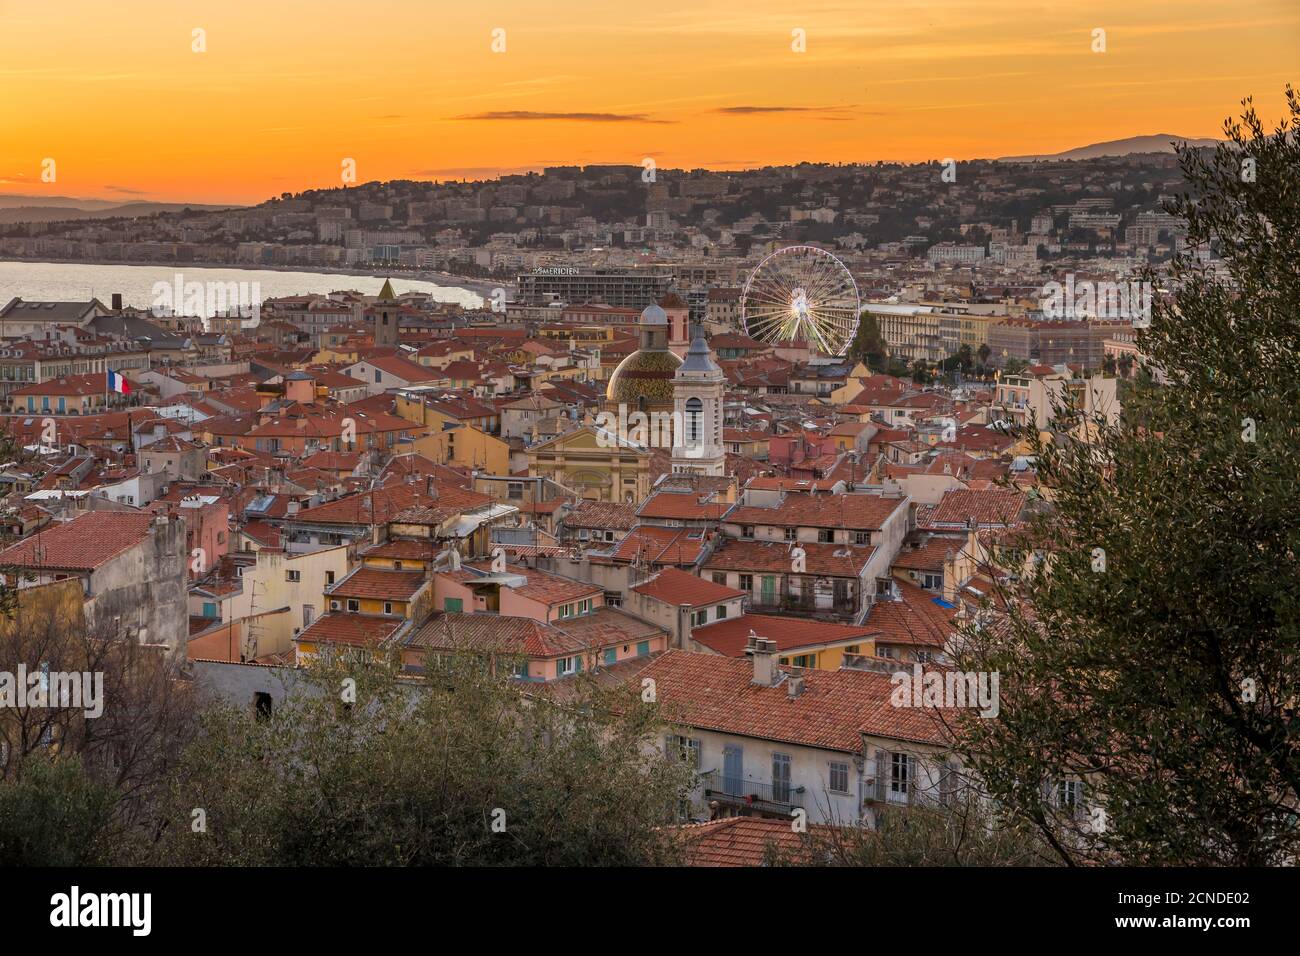 Vista elevada desde Castle Hill sobre el casco antiguo al atardecer, Niza, Alpes Maritimes, Costa Azul, Riviera Francesa, Provenza, Francia, Mediterráneo Foto de stock